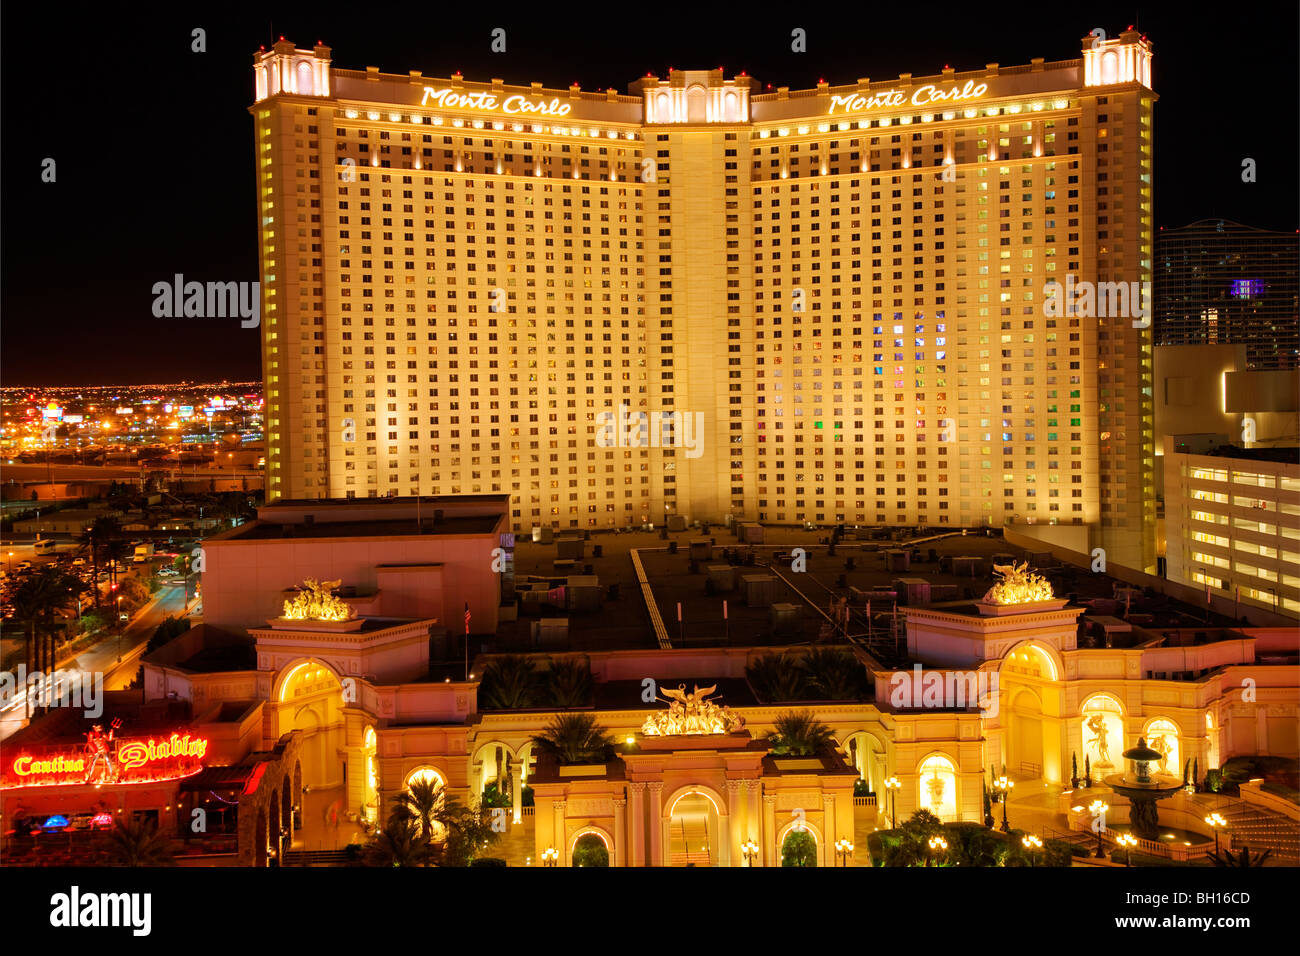 Monte Carlo Hotel and Casino, Las Vegas, Nevada Stock Photo - Alamy